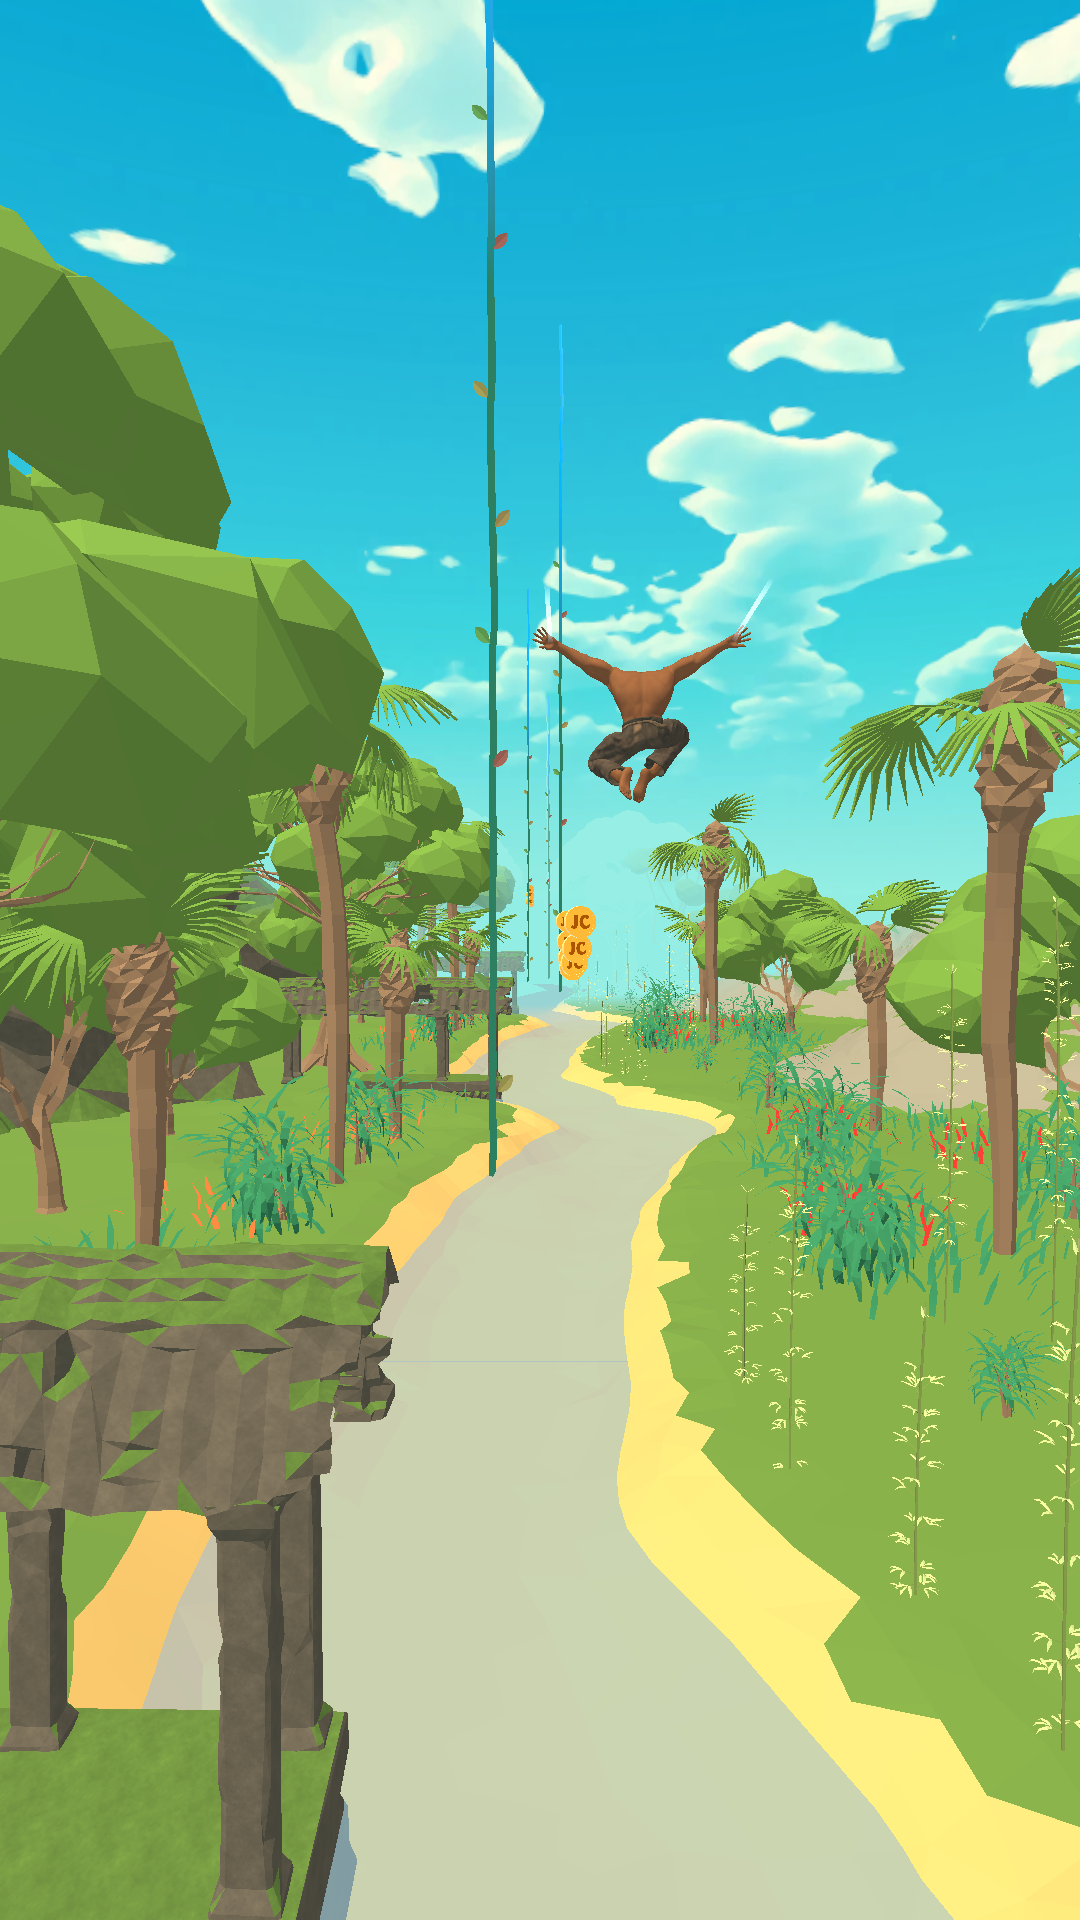 Tarzan Adventures遊戲截圖